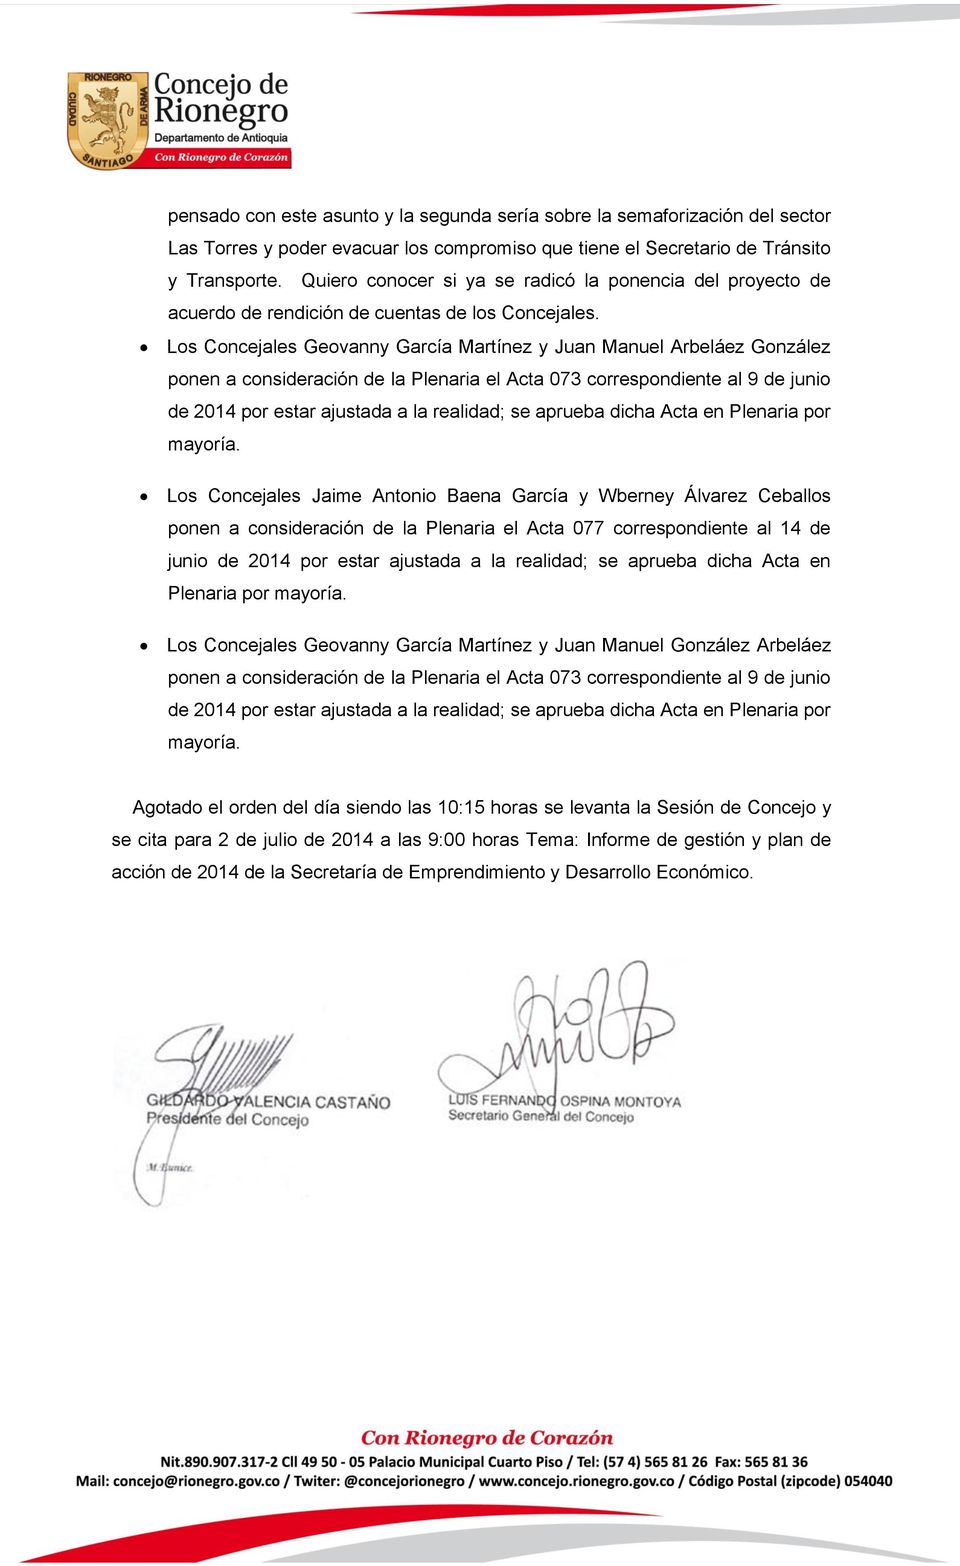 Los Concejales Geovanny García Martínez y Juan Manuel Arbeláez González ponen a consideración de la Plenaria el Acta 073 correspondiente al 9 de junio de 2014 por estar ajustada a la realidad; se